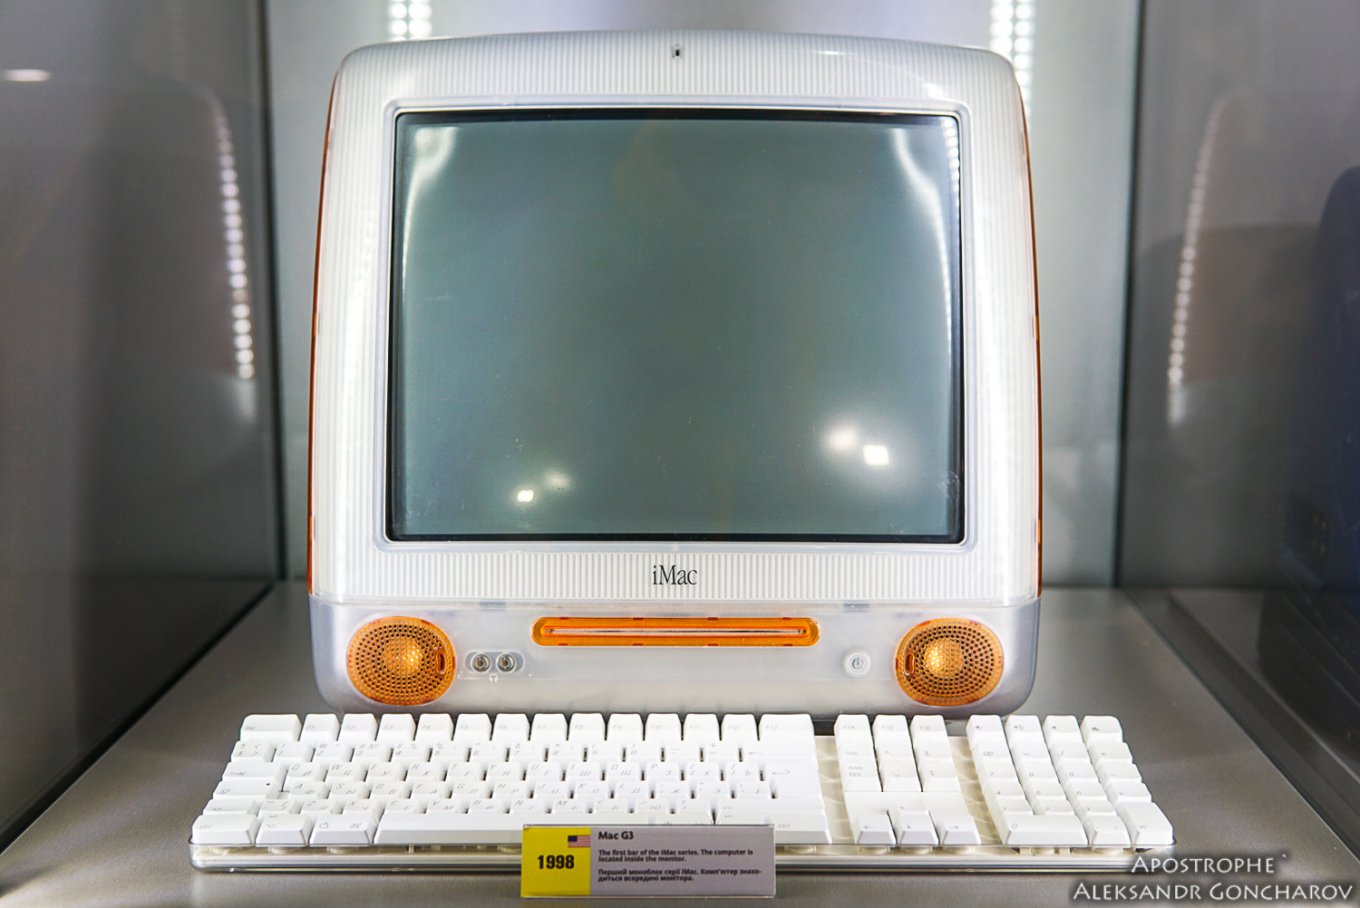 Стационарные компьютеры уходят в прошлое